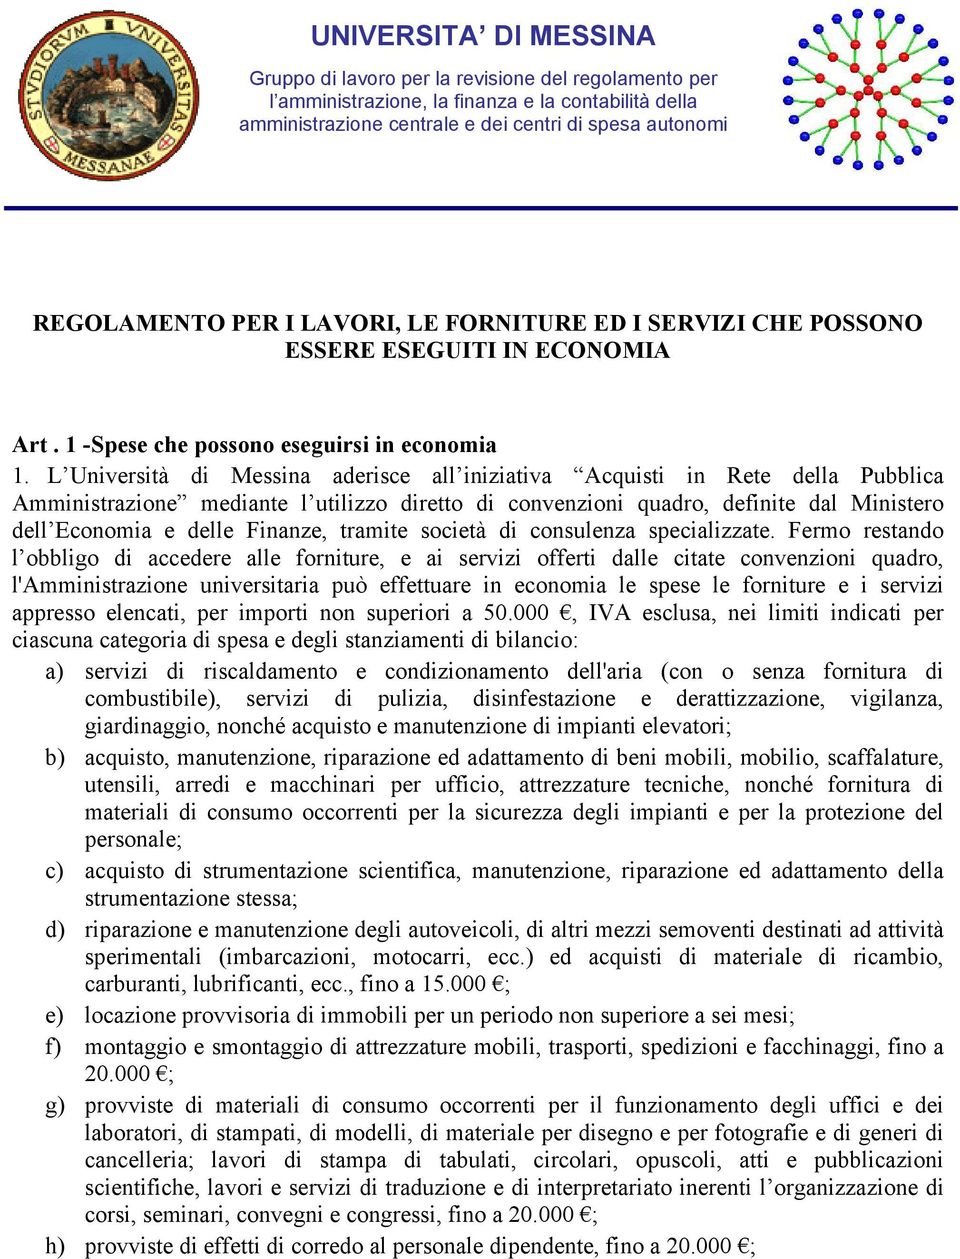 L Università di Messina aderisce all iniziativa Acquisti in Rete della Pubblica Amministrazione mediante l utilizzo diretto di convenzioni quadro, definite dal Ministero dell Economia e delle